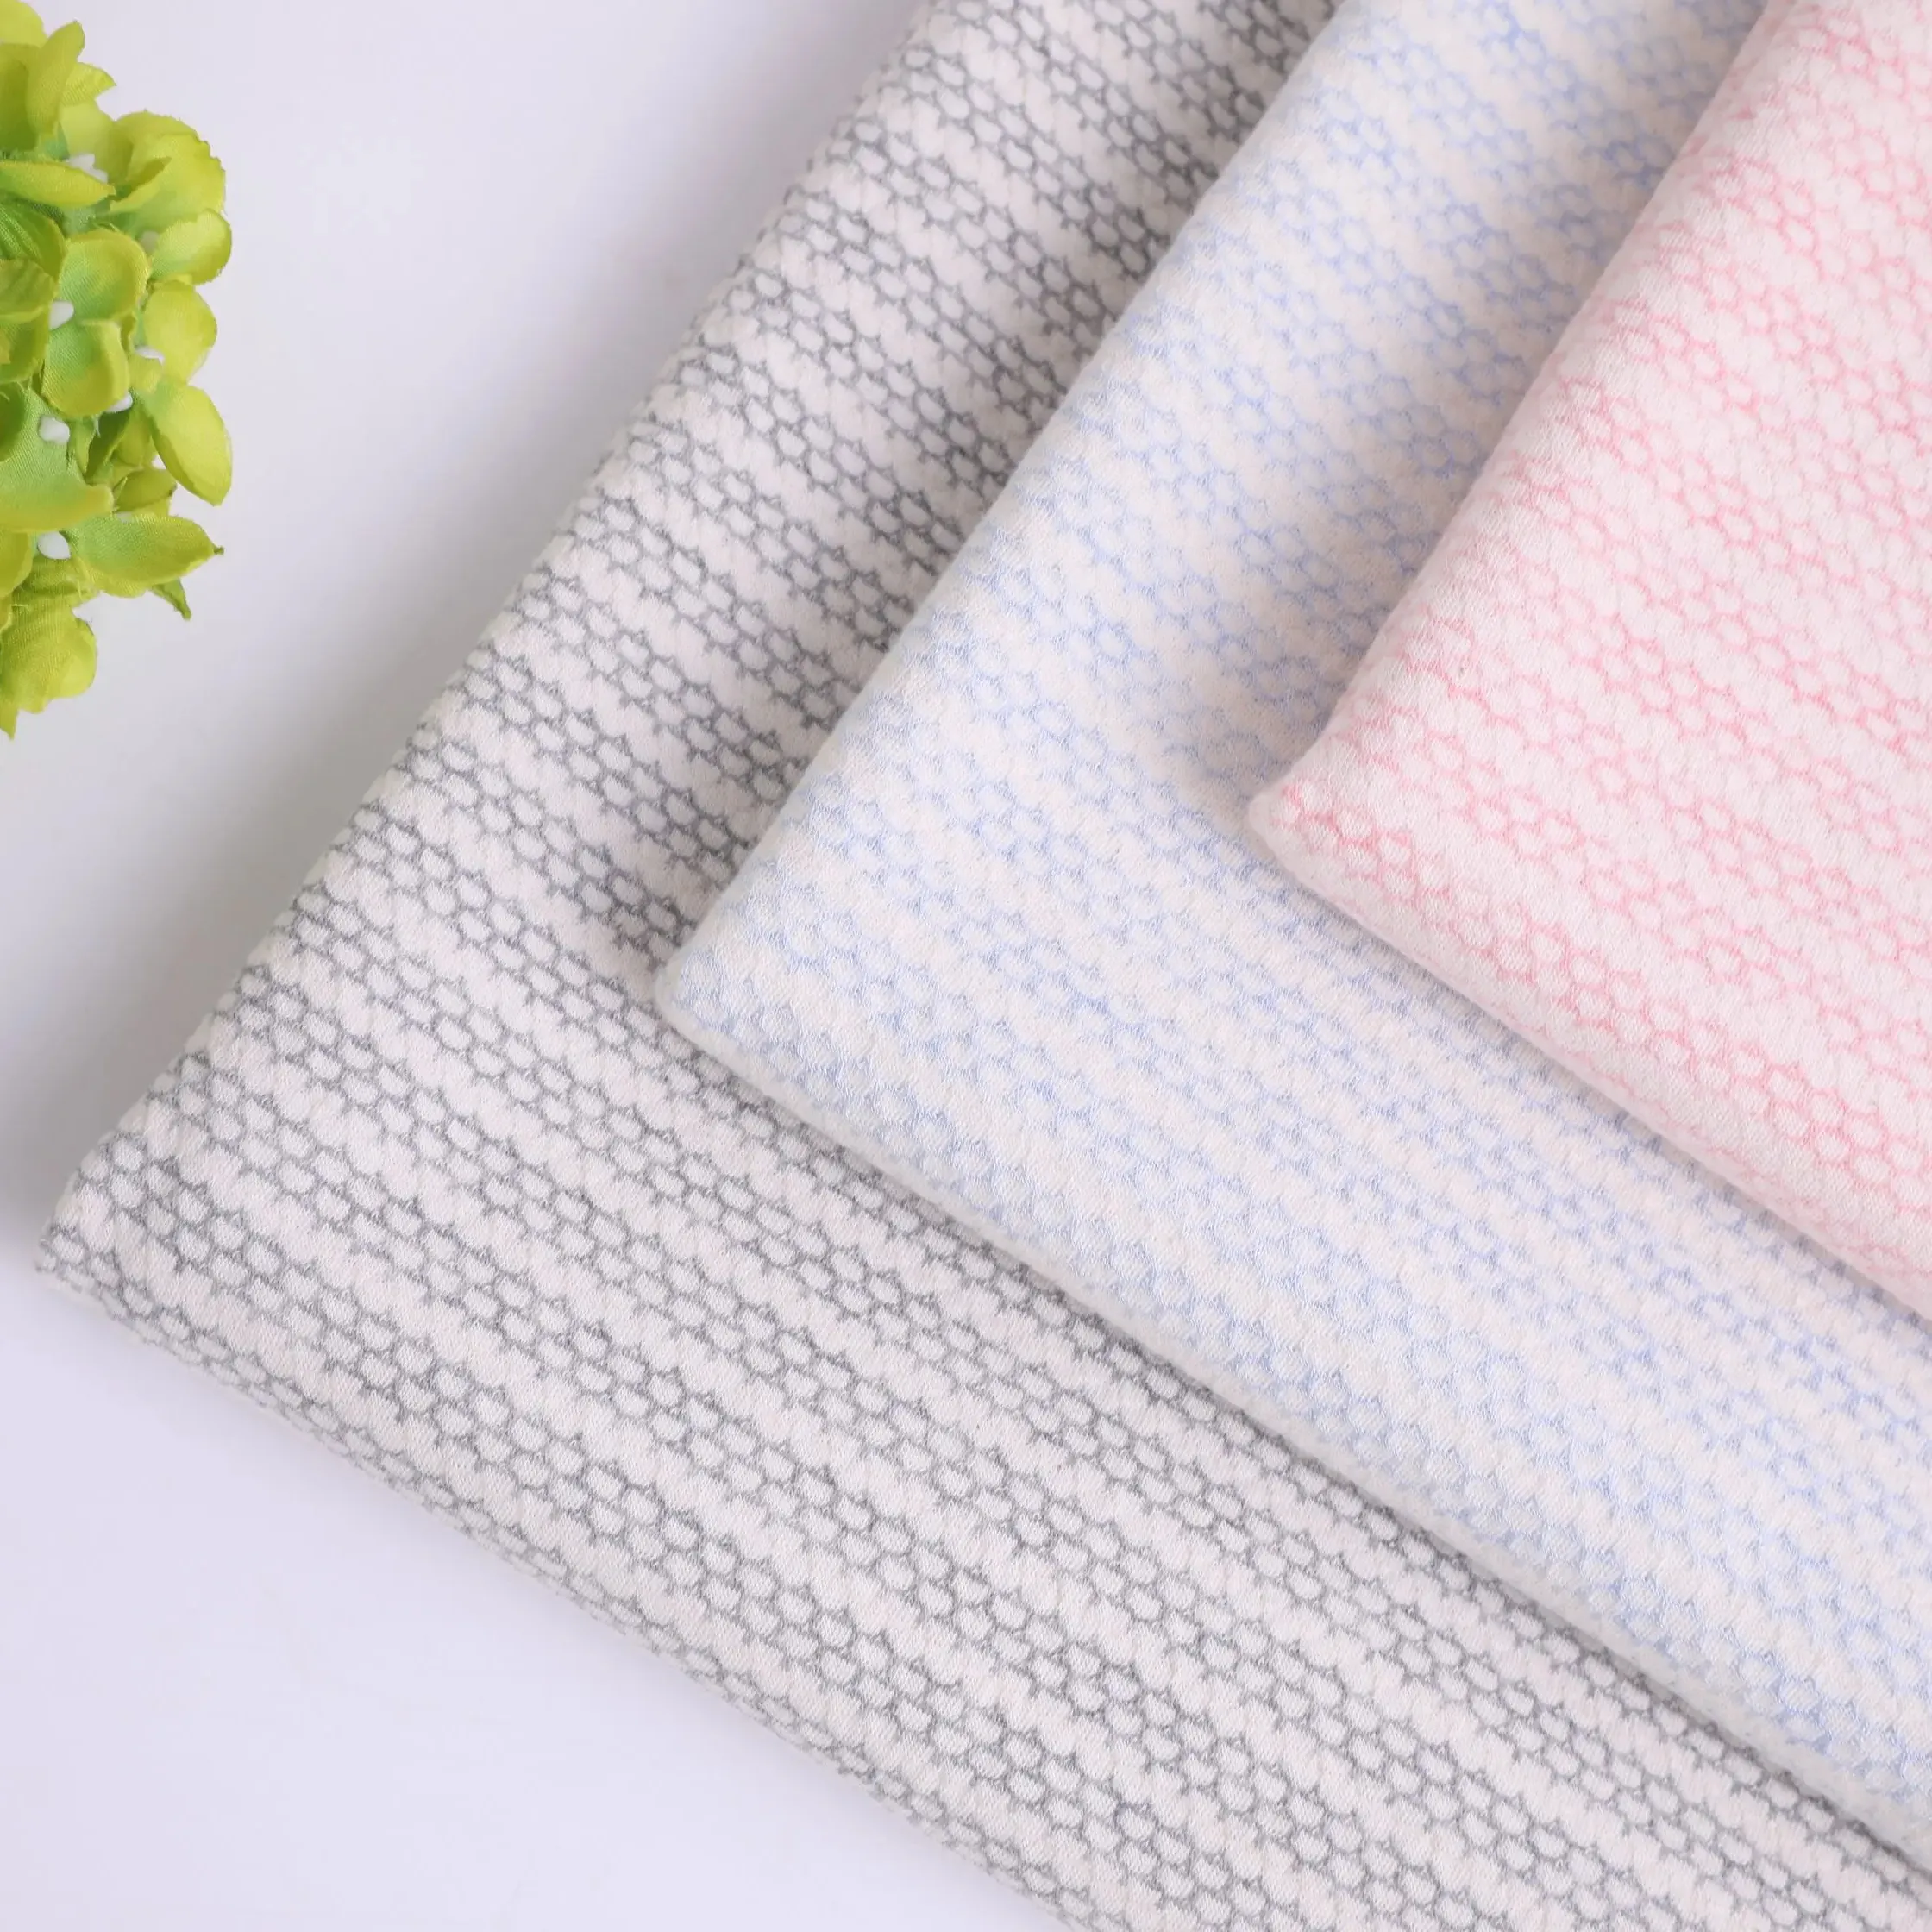 Özel tasarım StripeOrganic pamuk Spandex polar giyim için mikro pamuk kadife kumaşlar